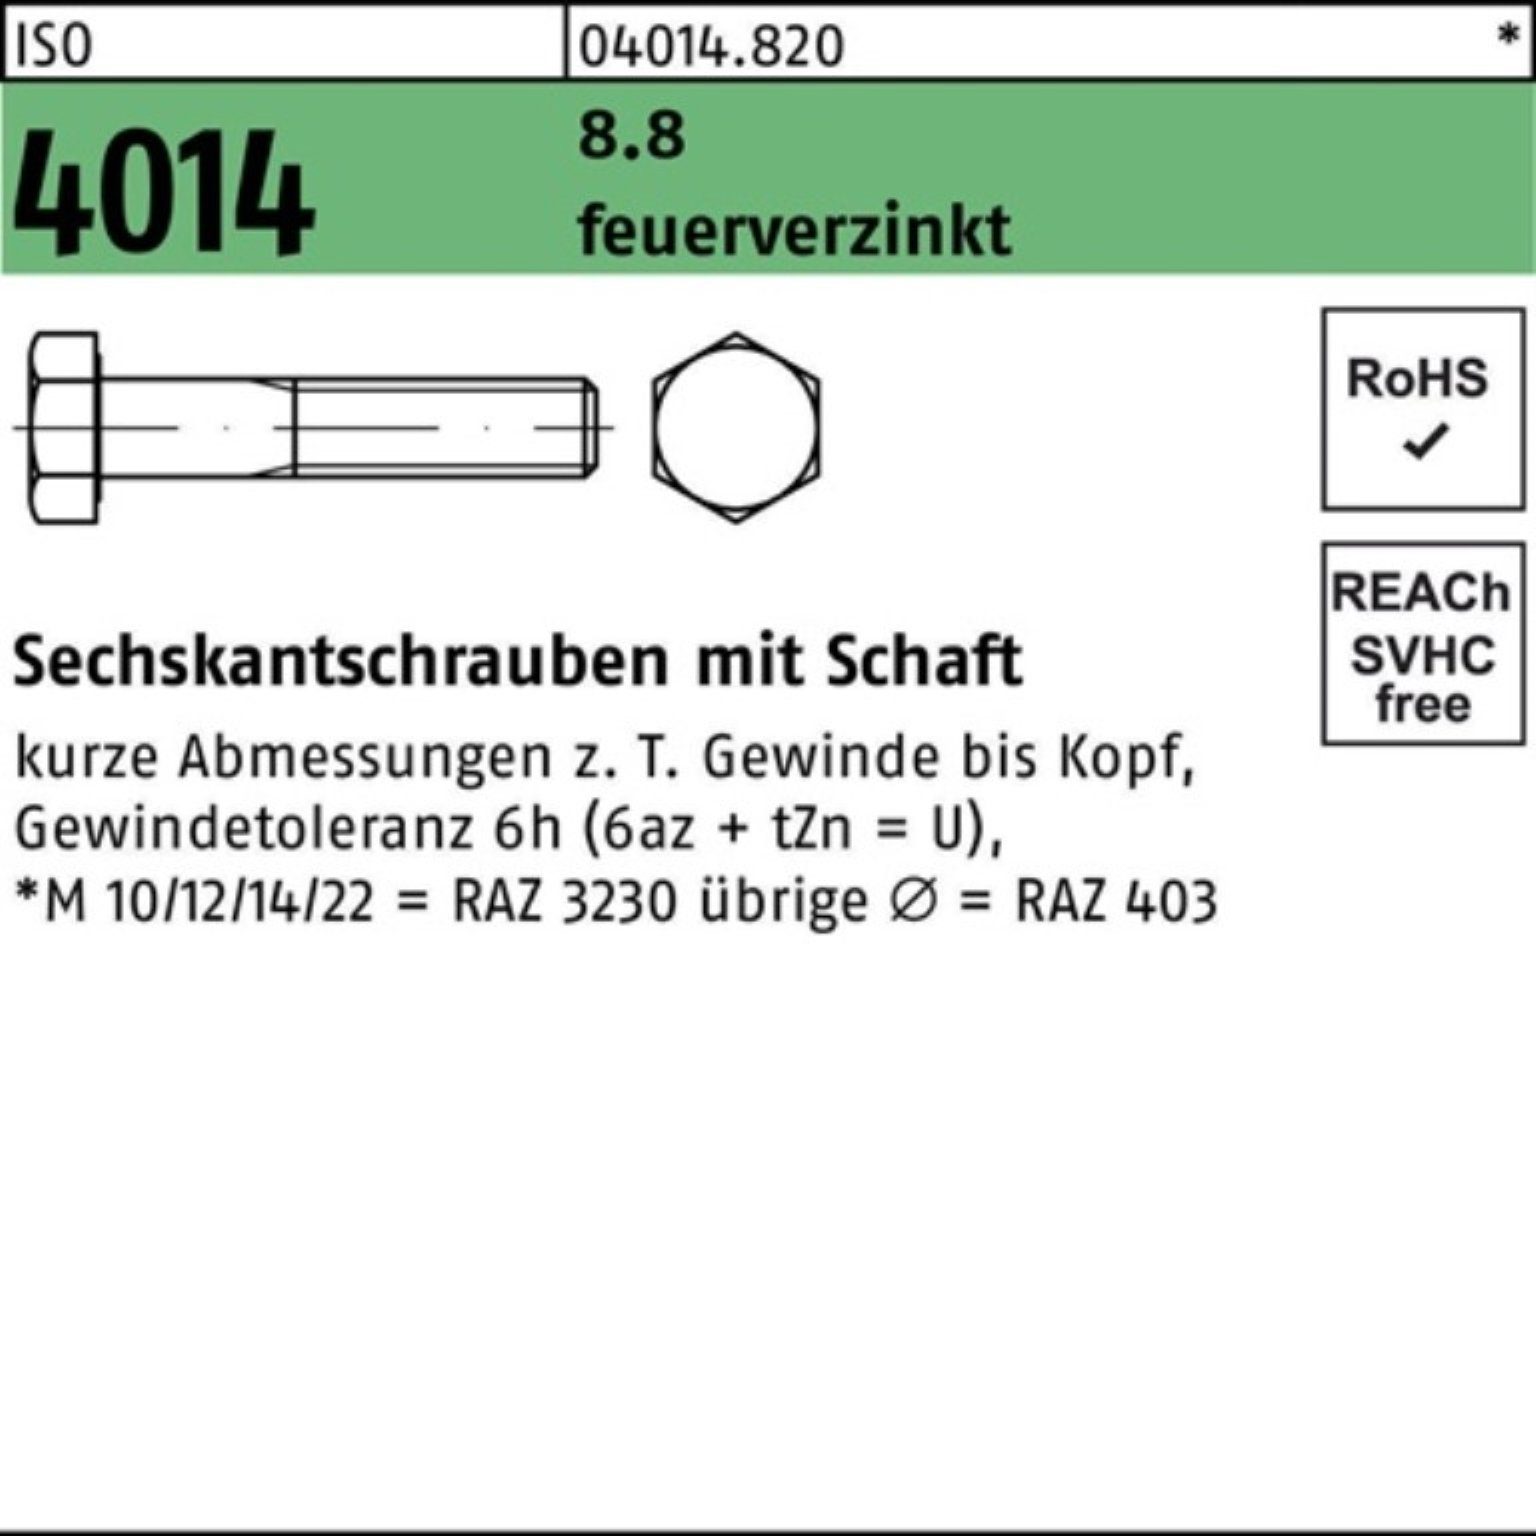 Sechskantschraube Bufab 4014 Schaft 100er 8.8 160 M16x Sechskantschraube ISO feuerverz. Pack 2